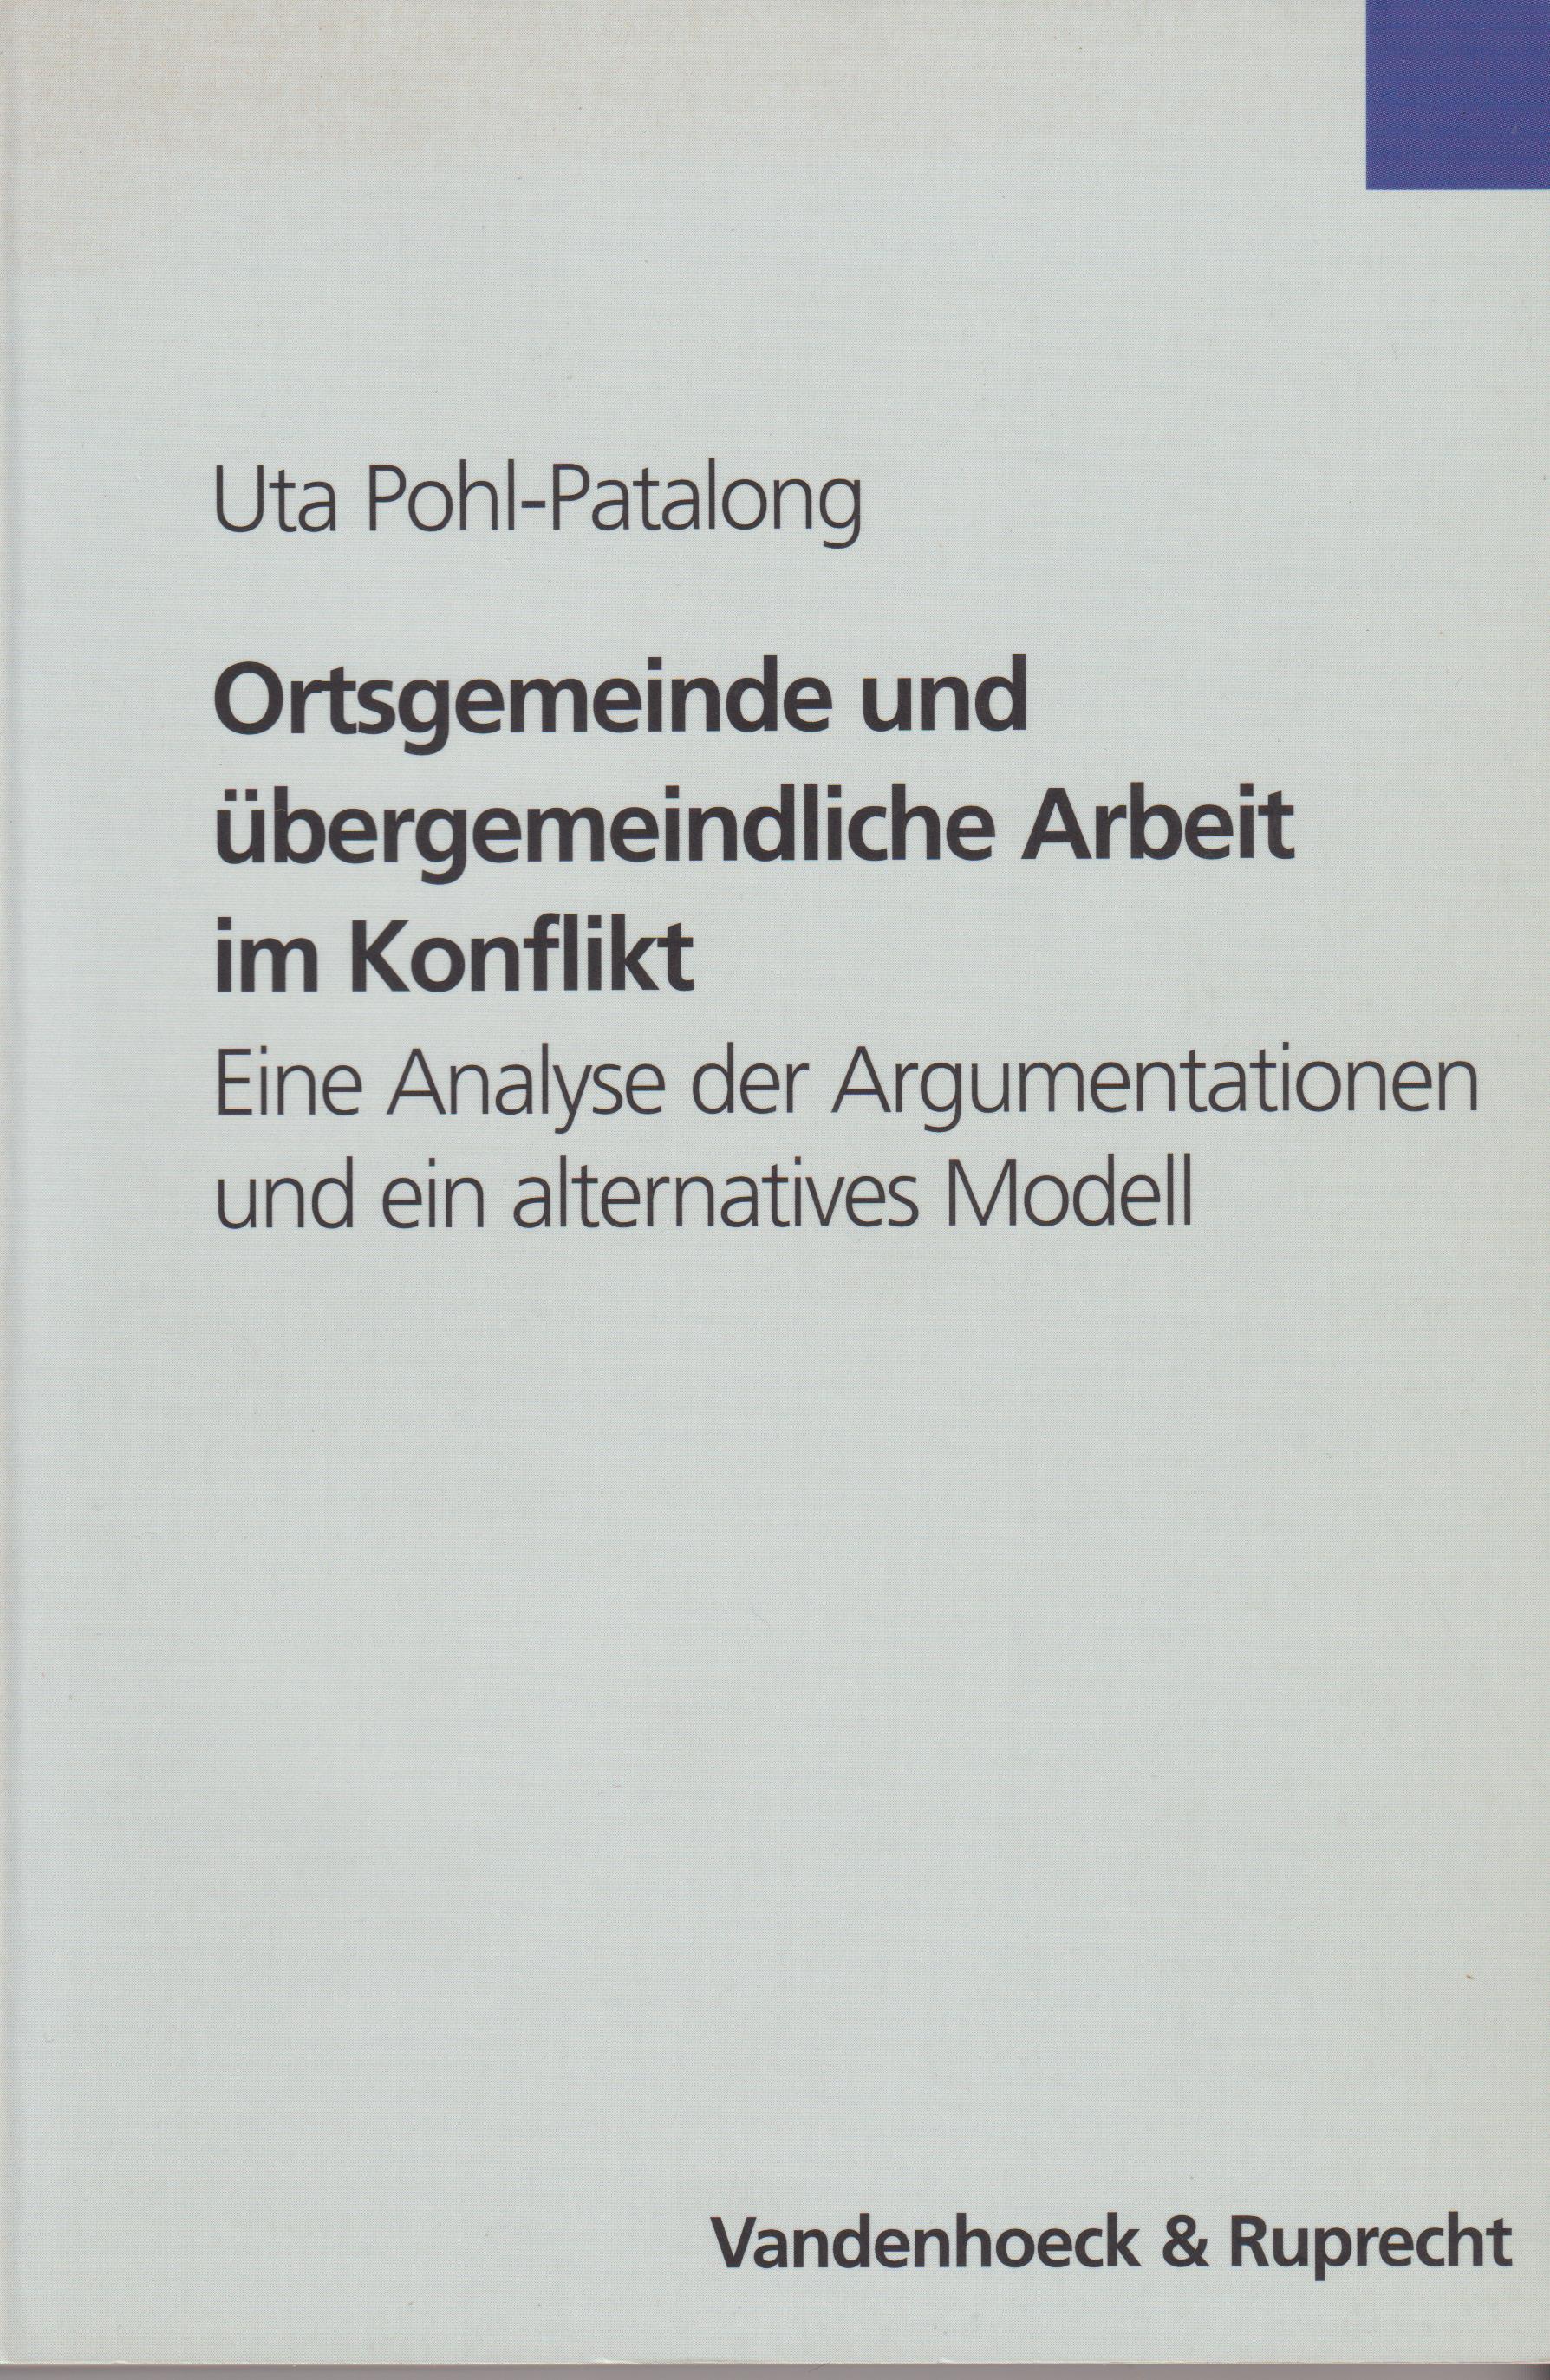 Ortsgemeinde und übergemeindliche Arbeit im Konflikt Eine Analyse der Argumentationen und ein alternatives Modell - Pohl-Patalong, Uta